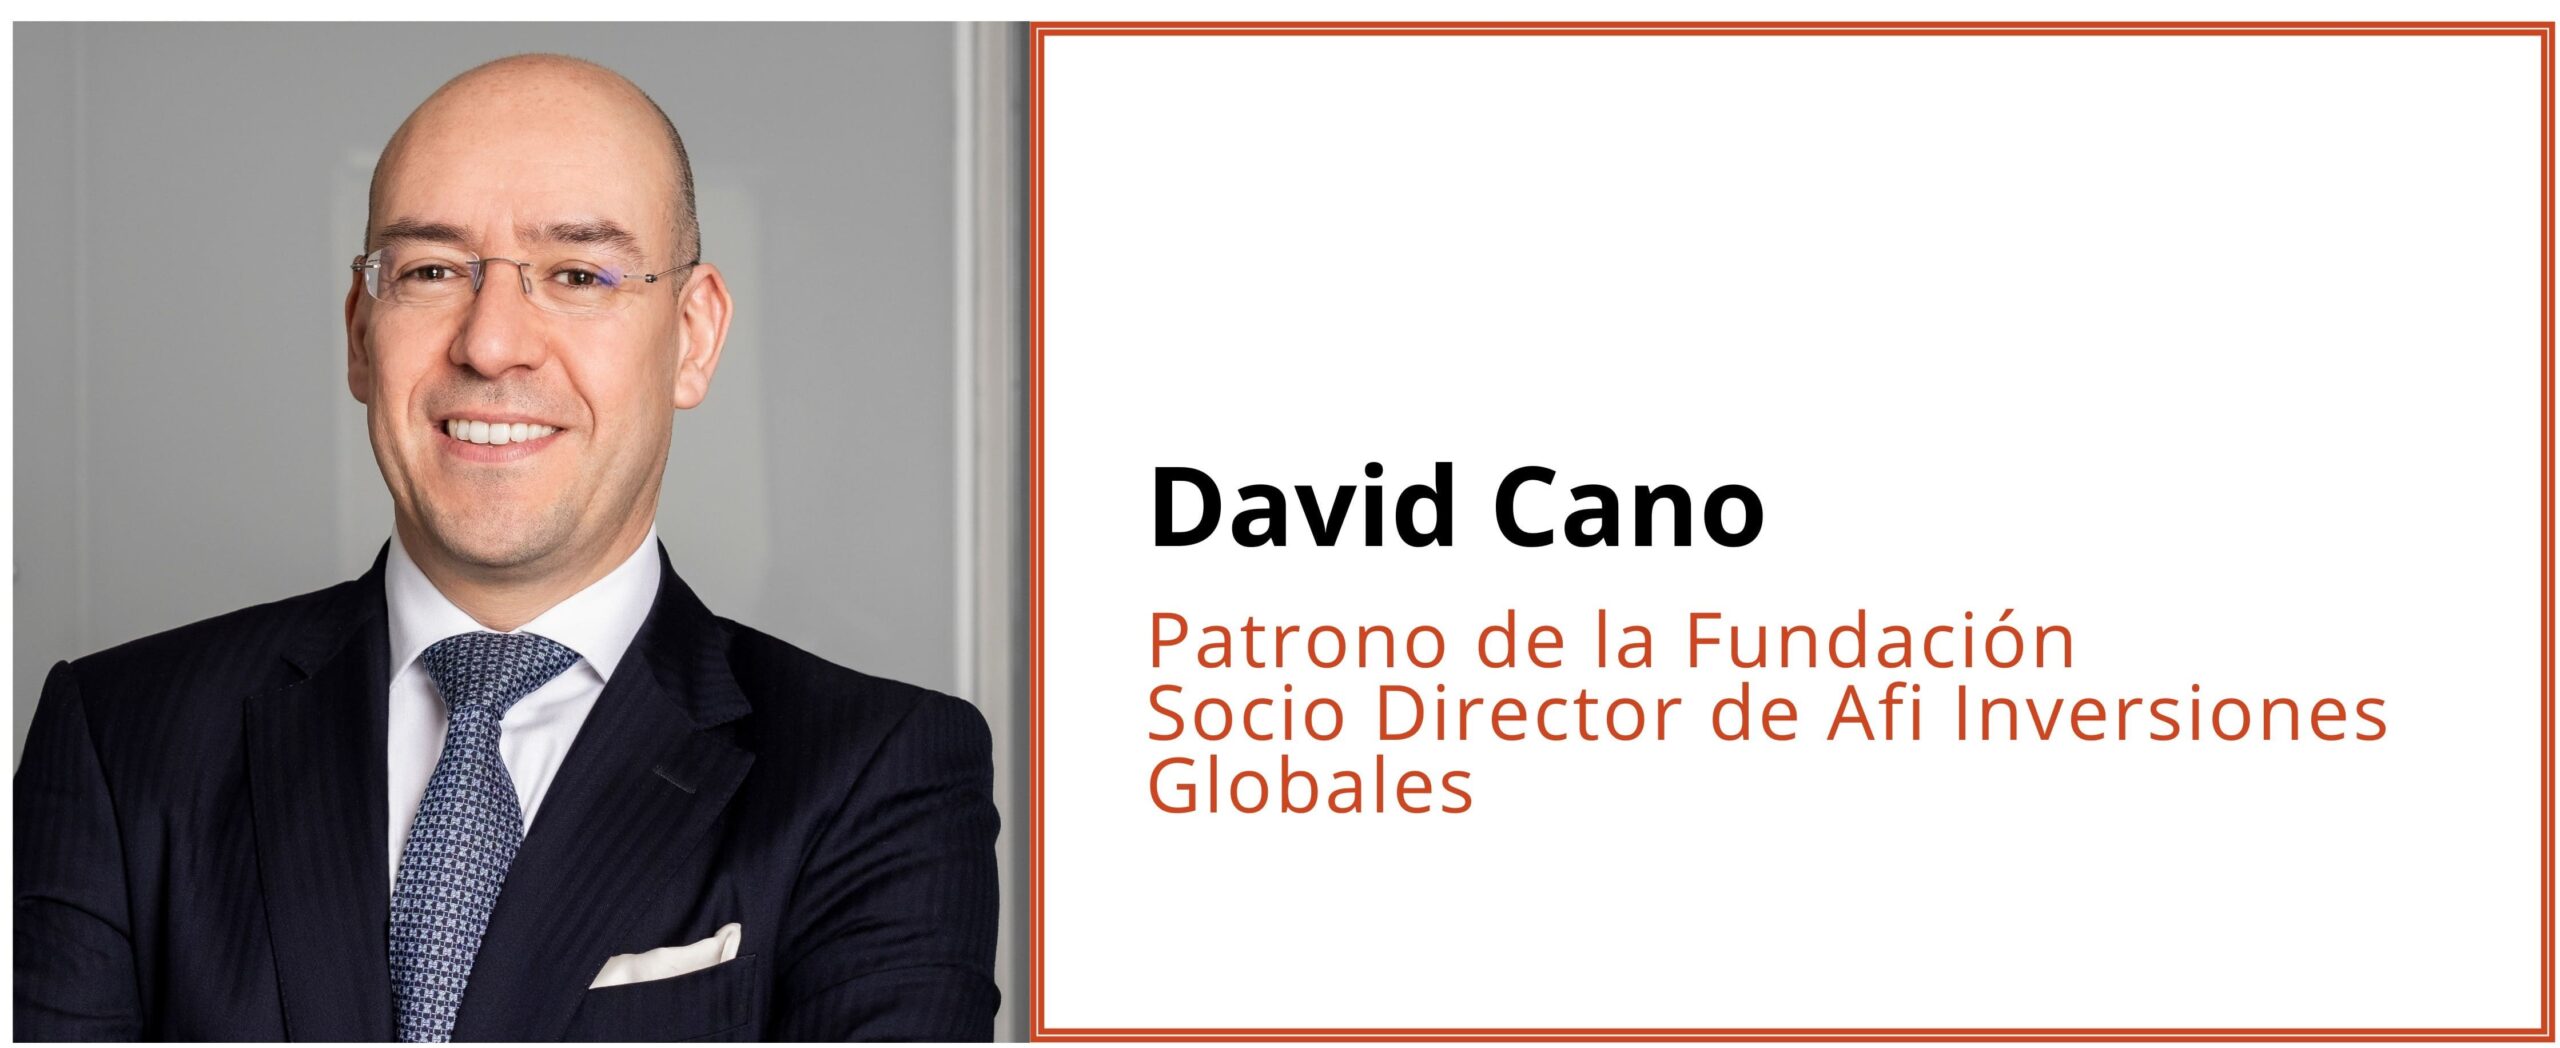 David Cano